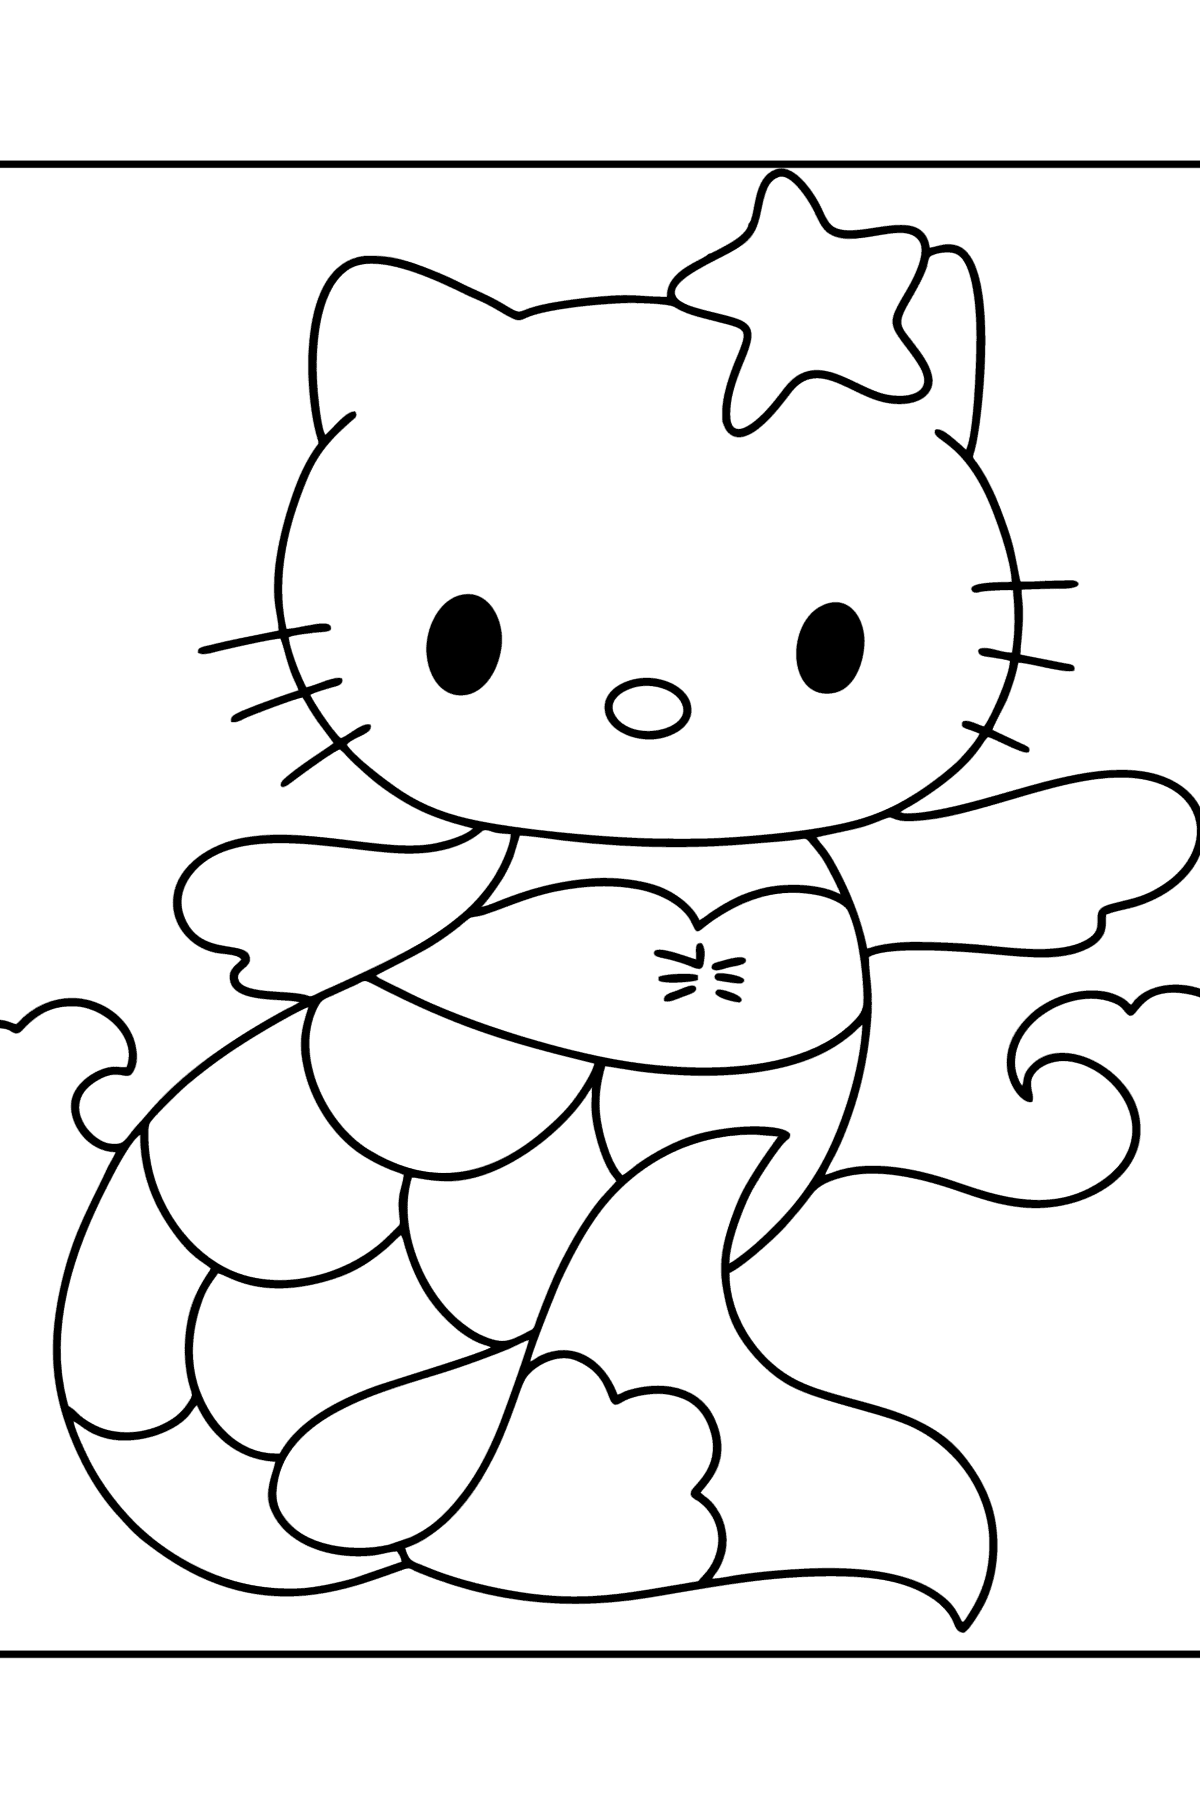 Coloriage - Hello Kitty sirène - Coloriages pour les Enfants